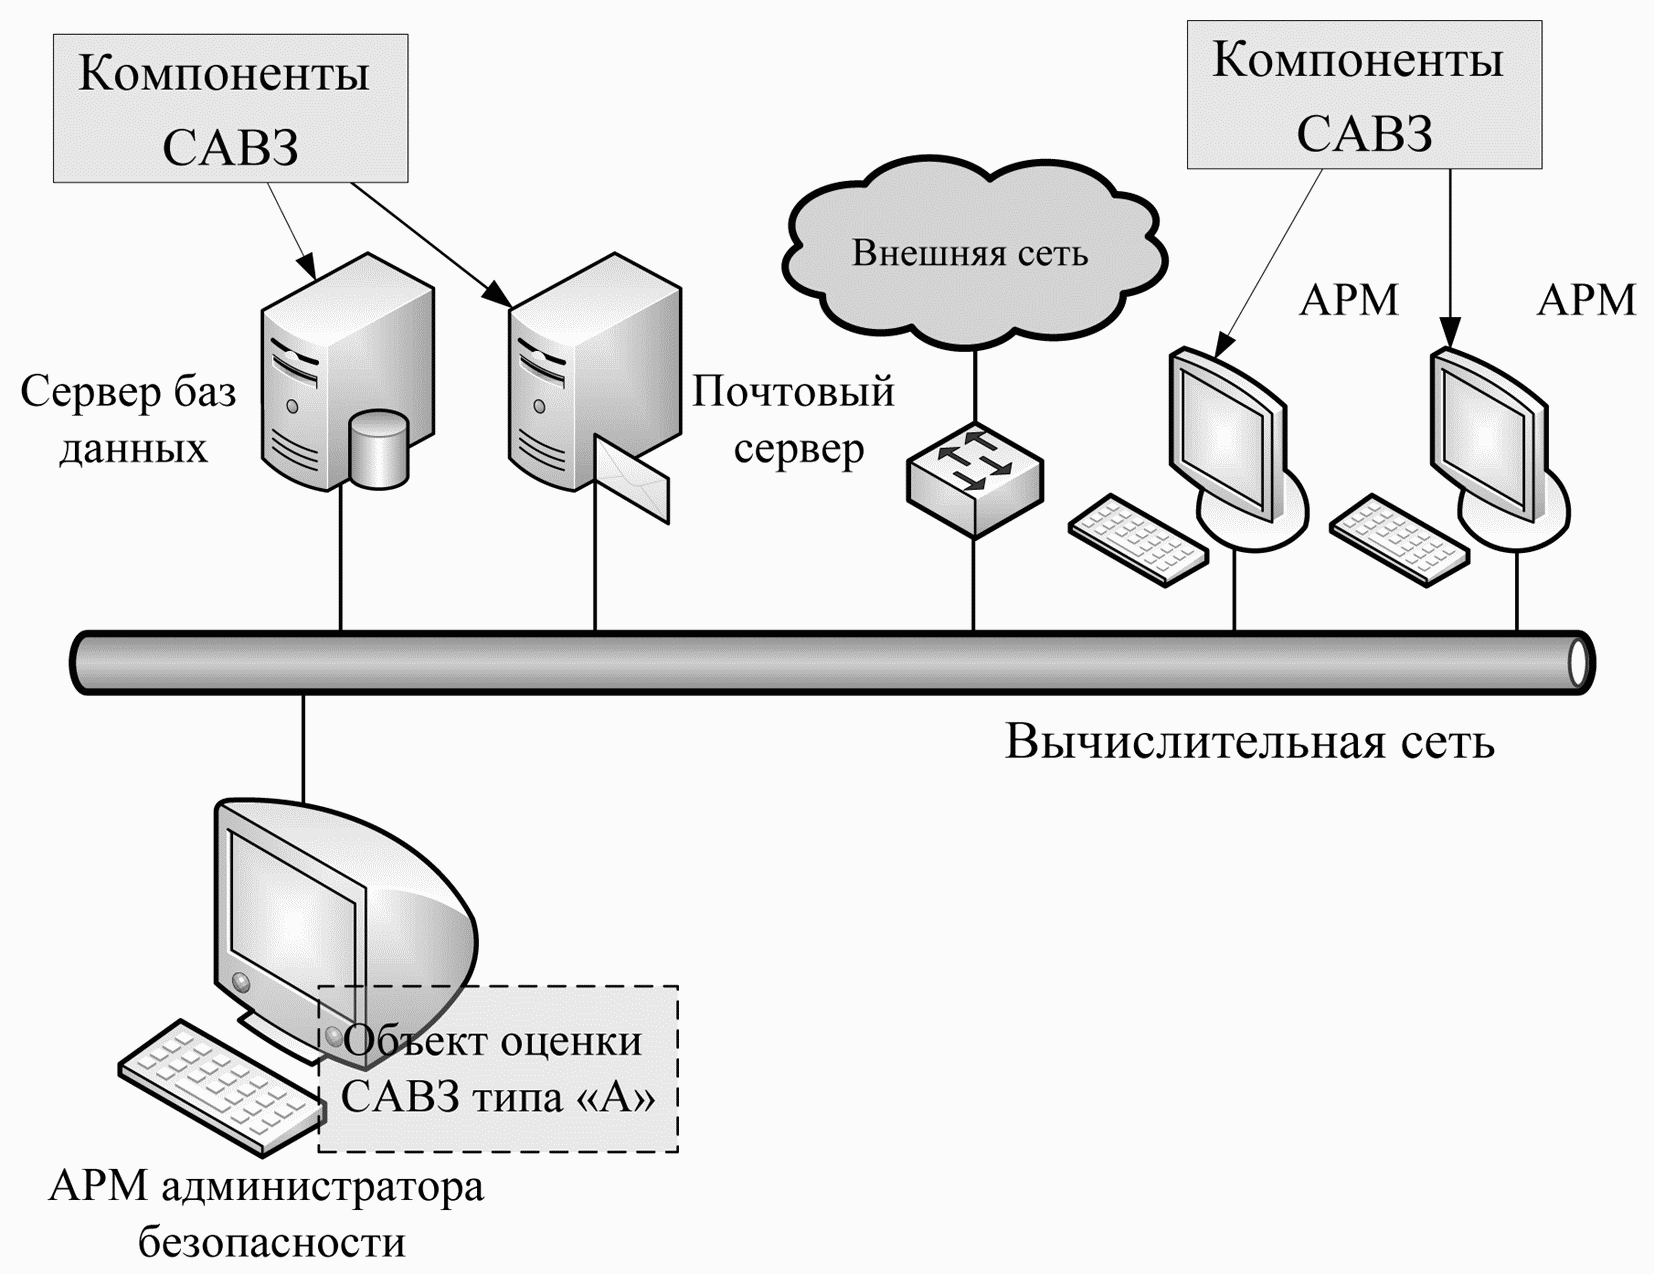 Схема арм. Администрирование баз данных и серверов схемы. АРМ И сервера. АРМ администратора.